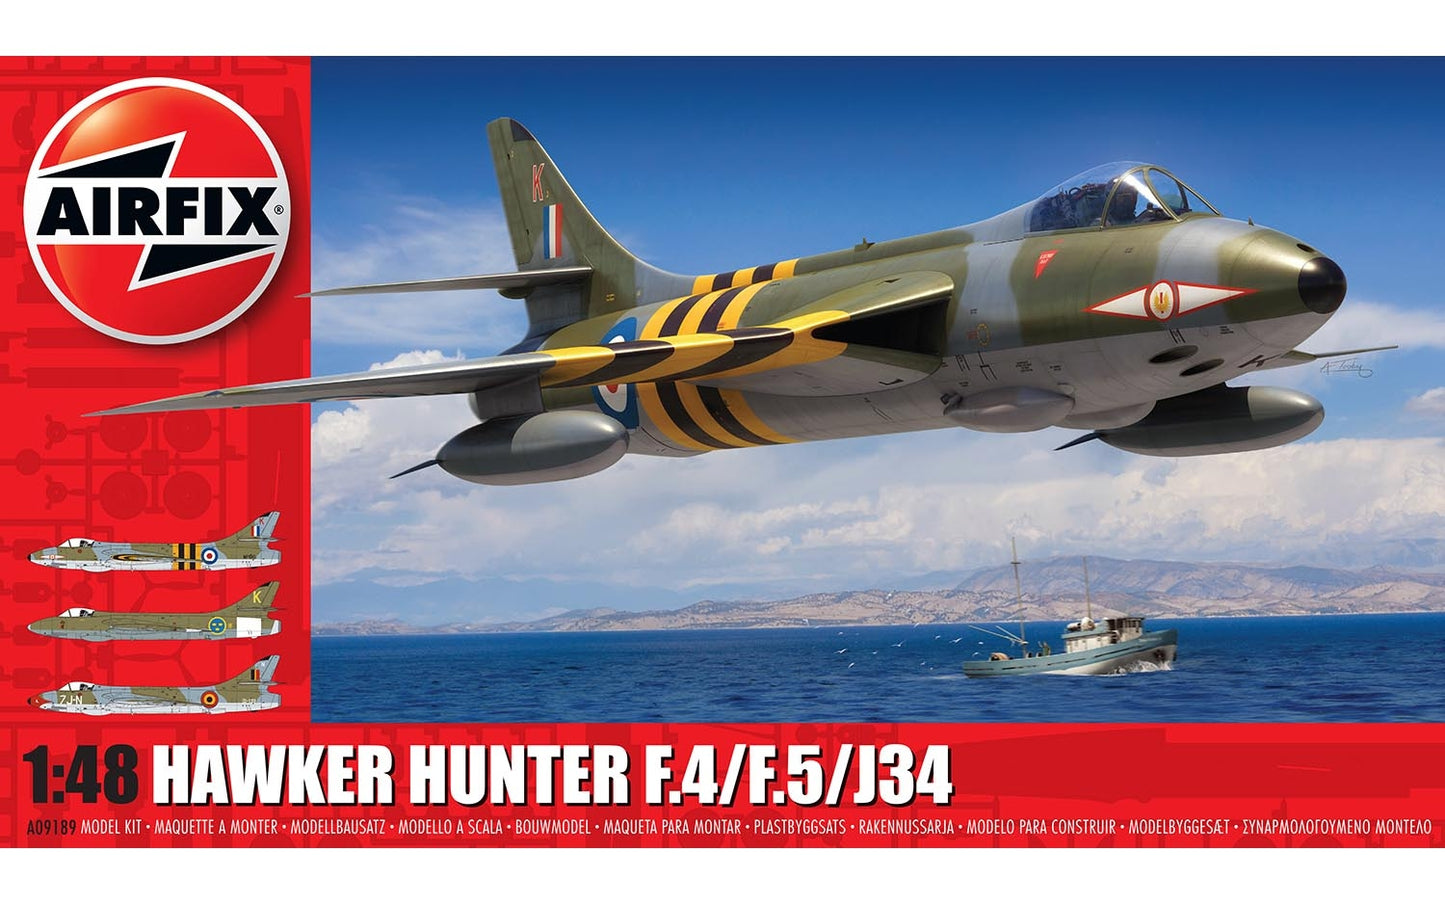 Hawker Hunter F.4/F.5/J34 - AIRFIX 1/48